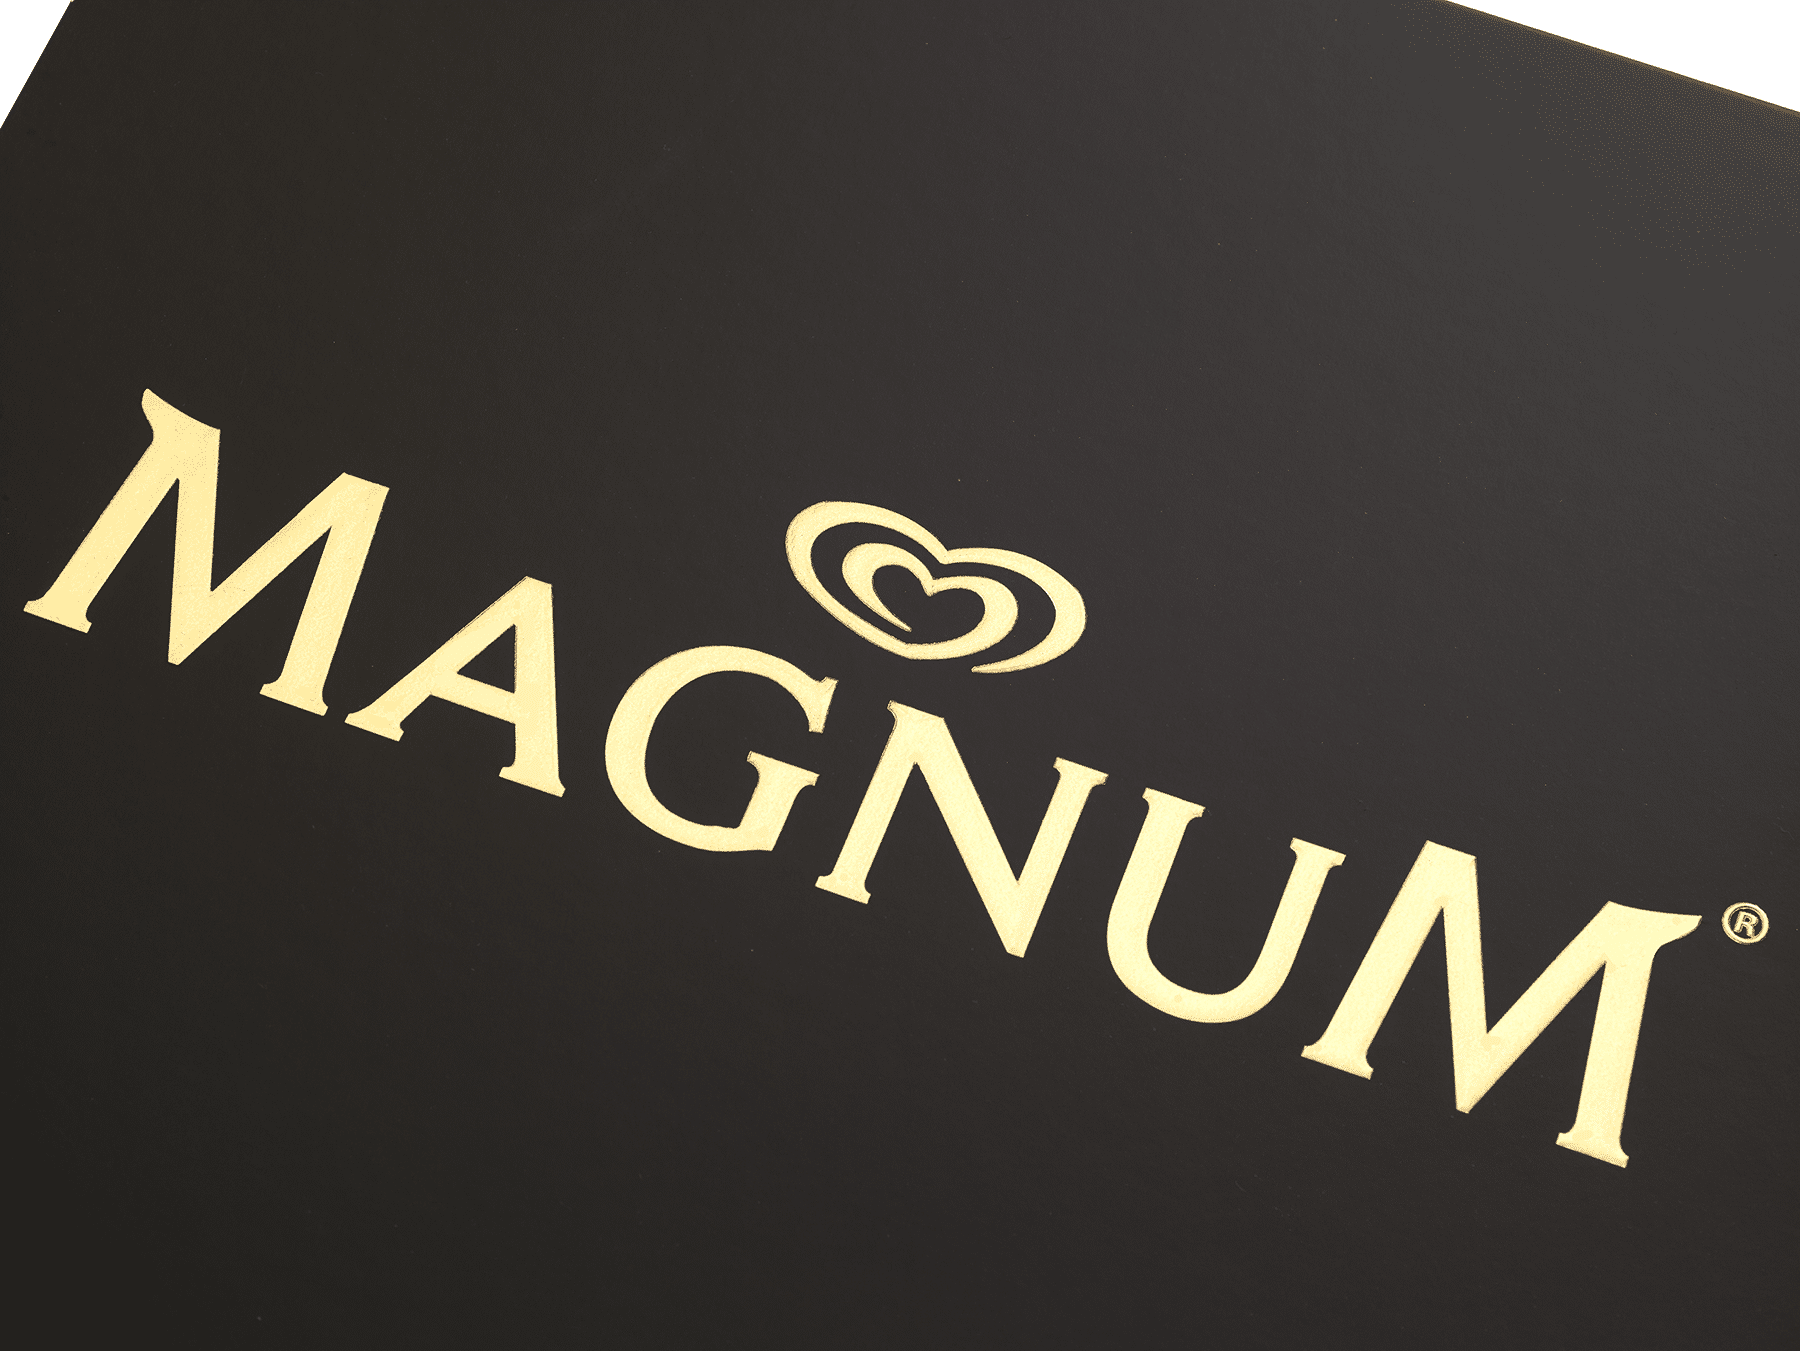 magnum, custom packaging, ice cream, rigid box, packaging design 